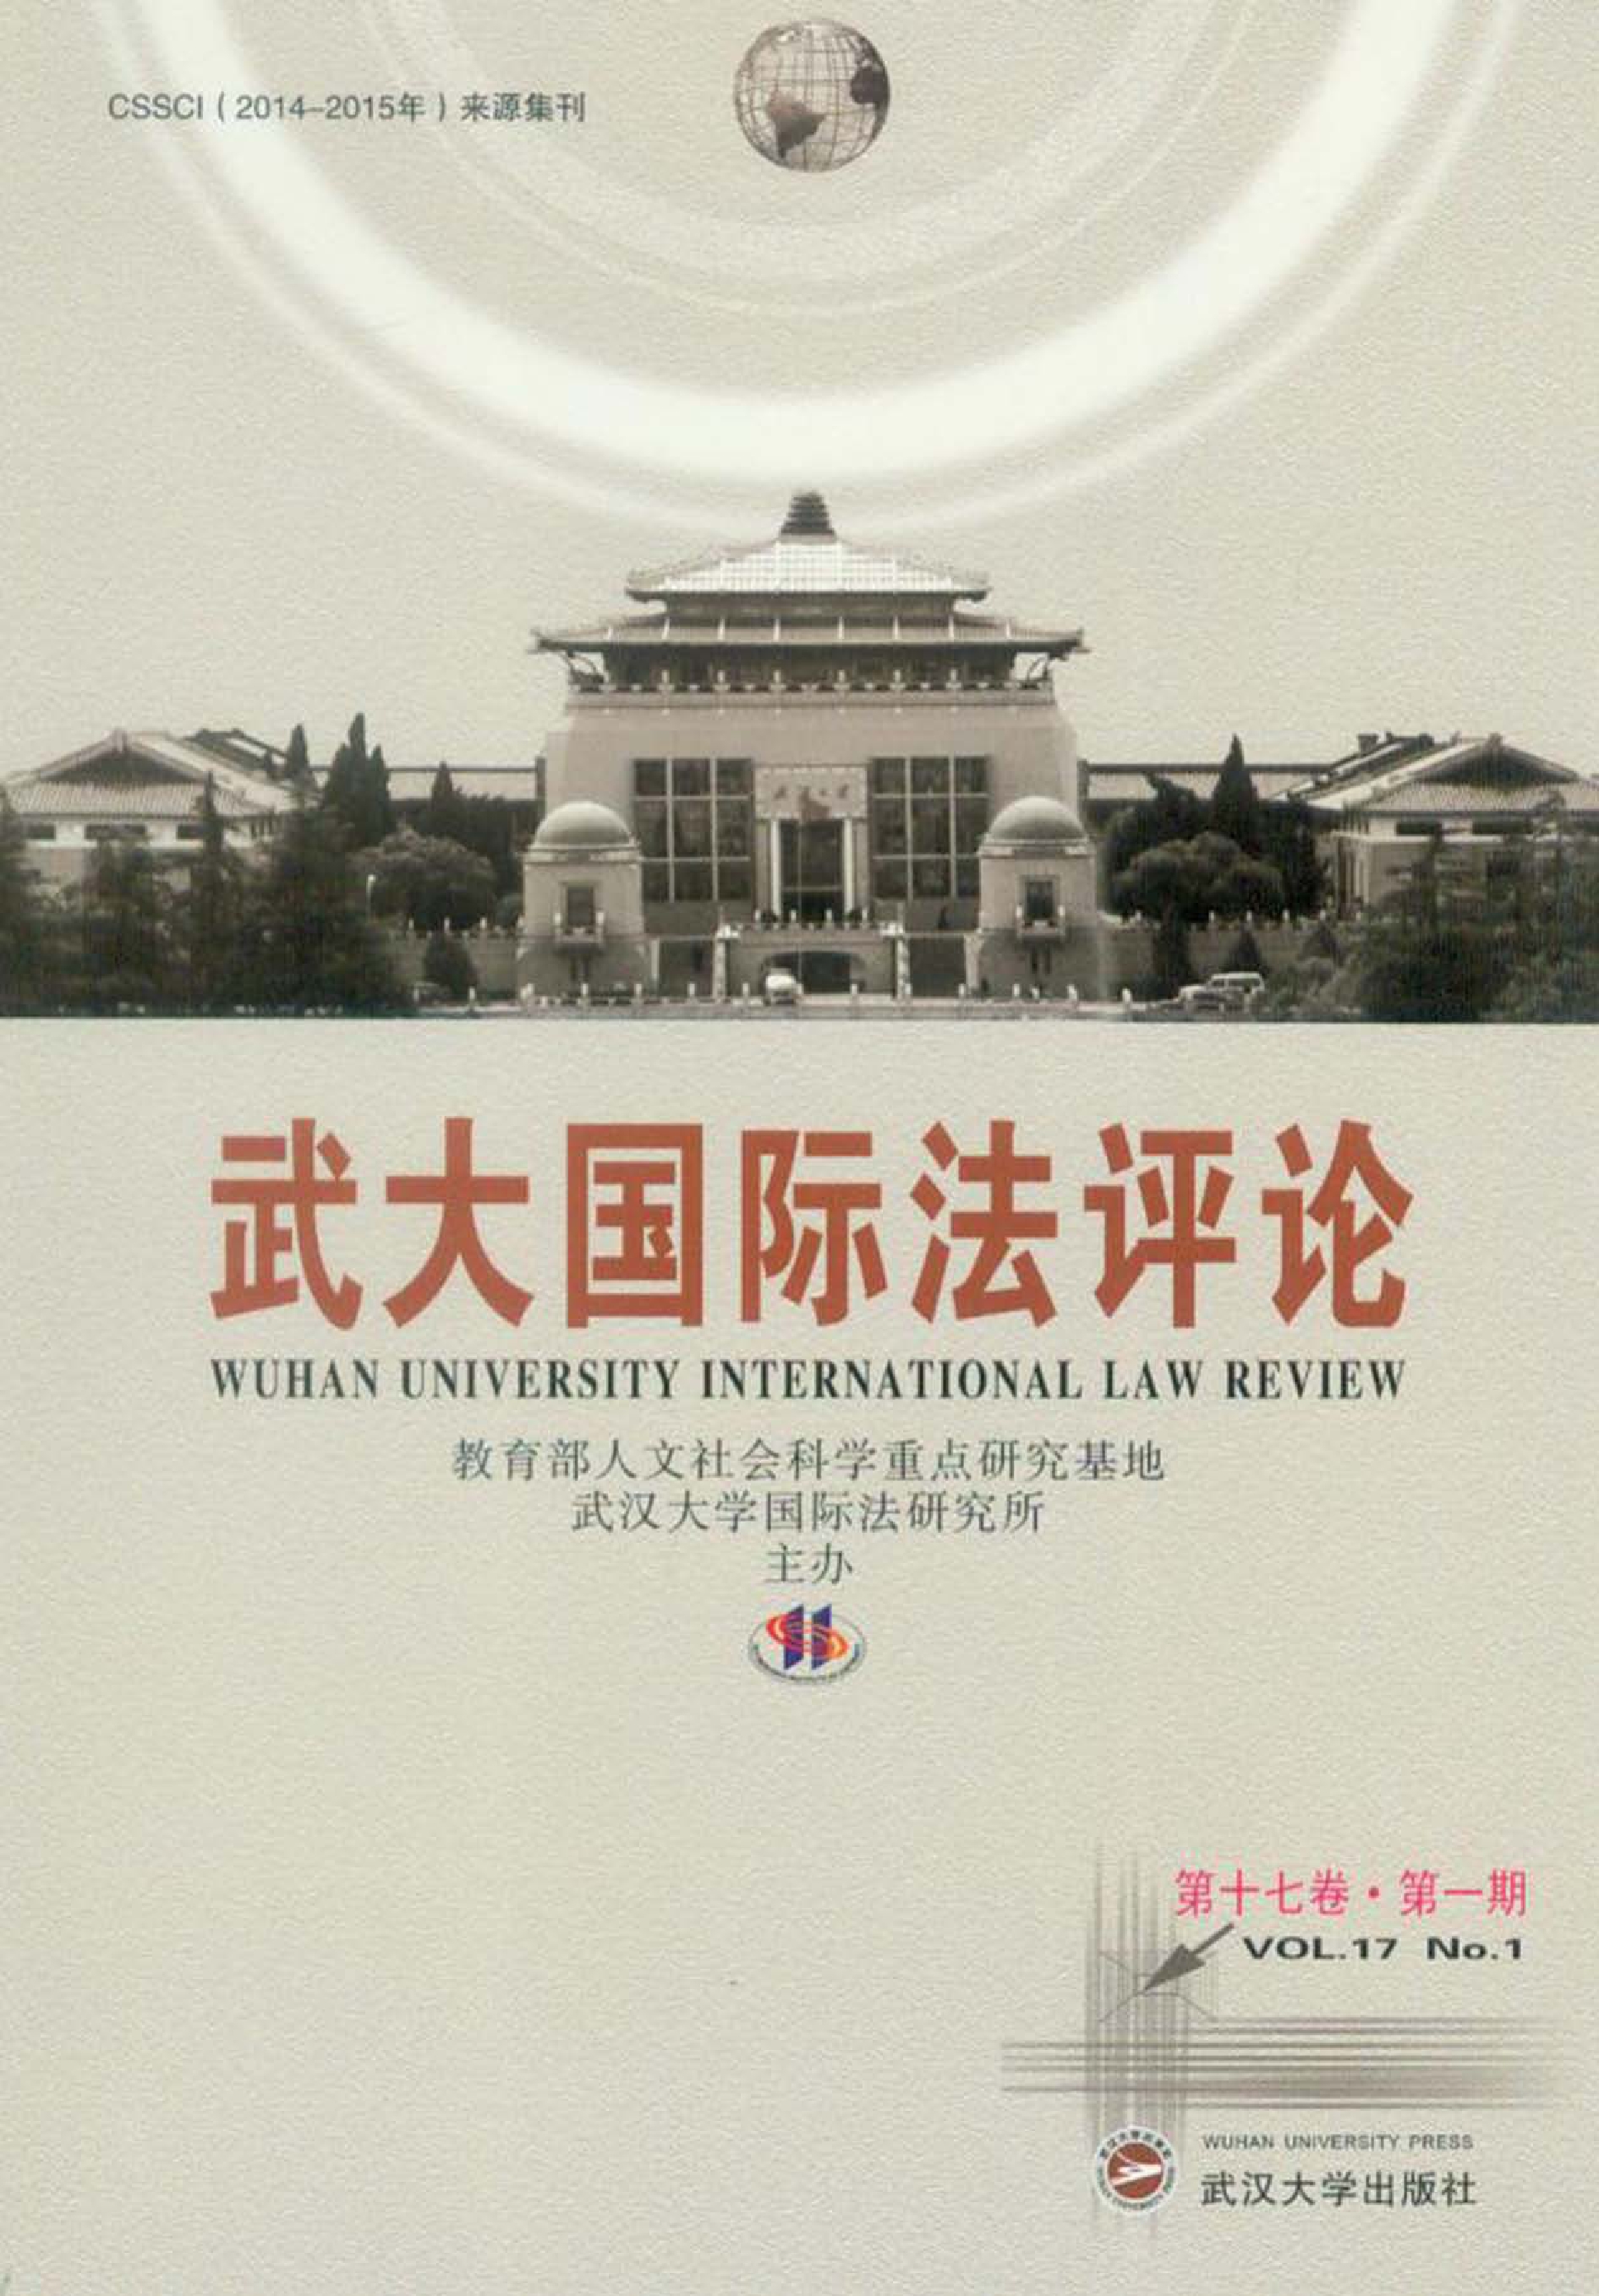 武大国际法评论 第十七卷 第一期